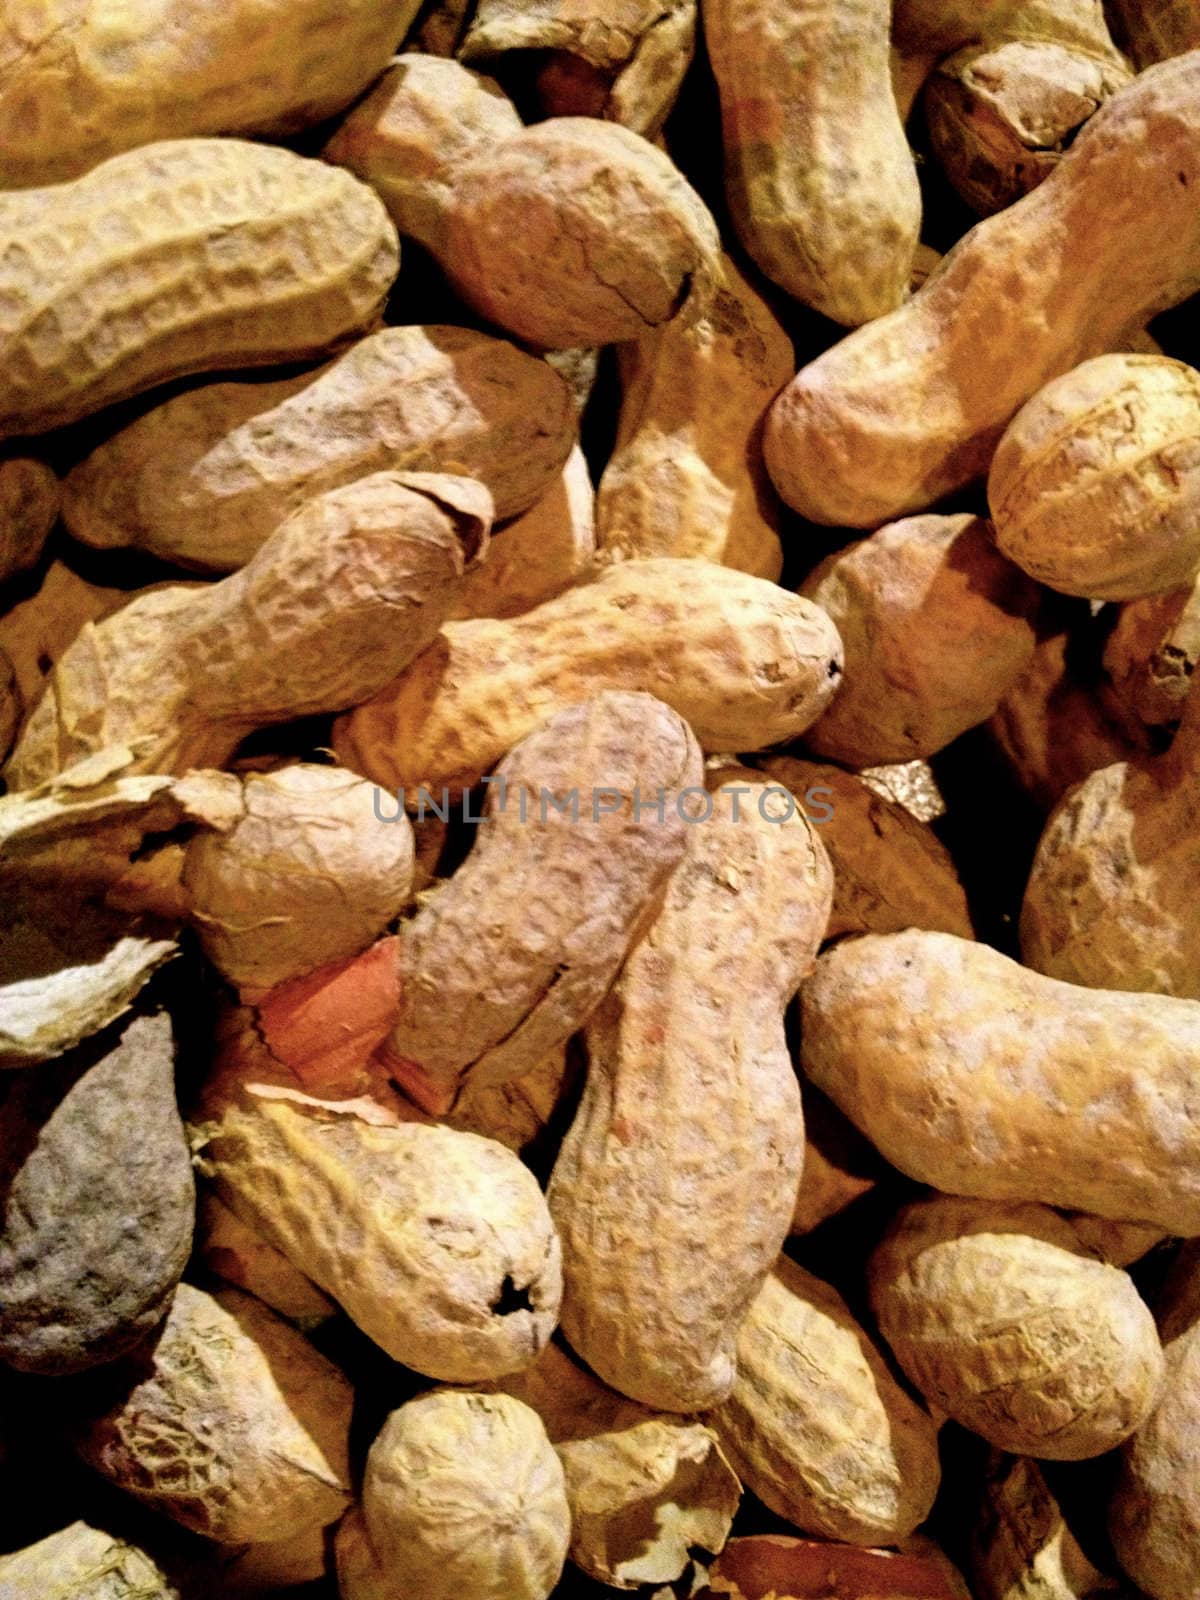 Peanuts
